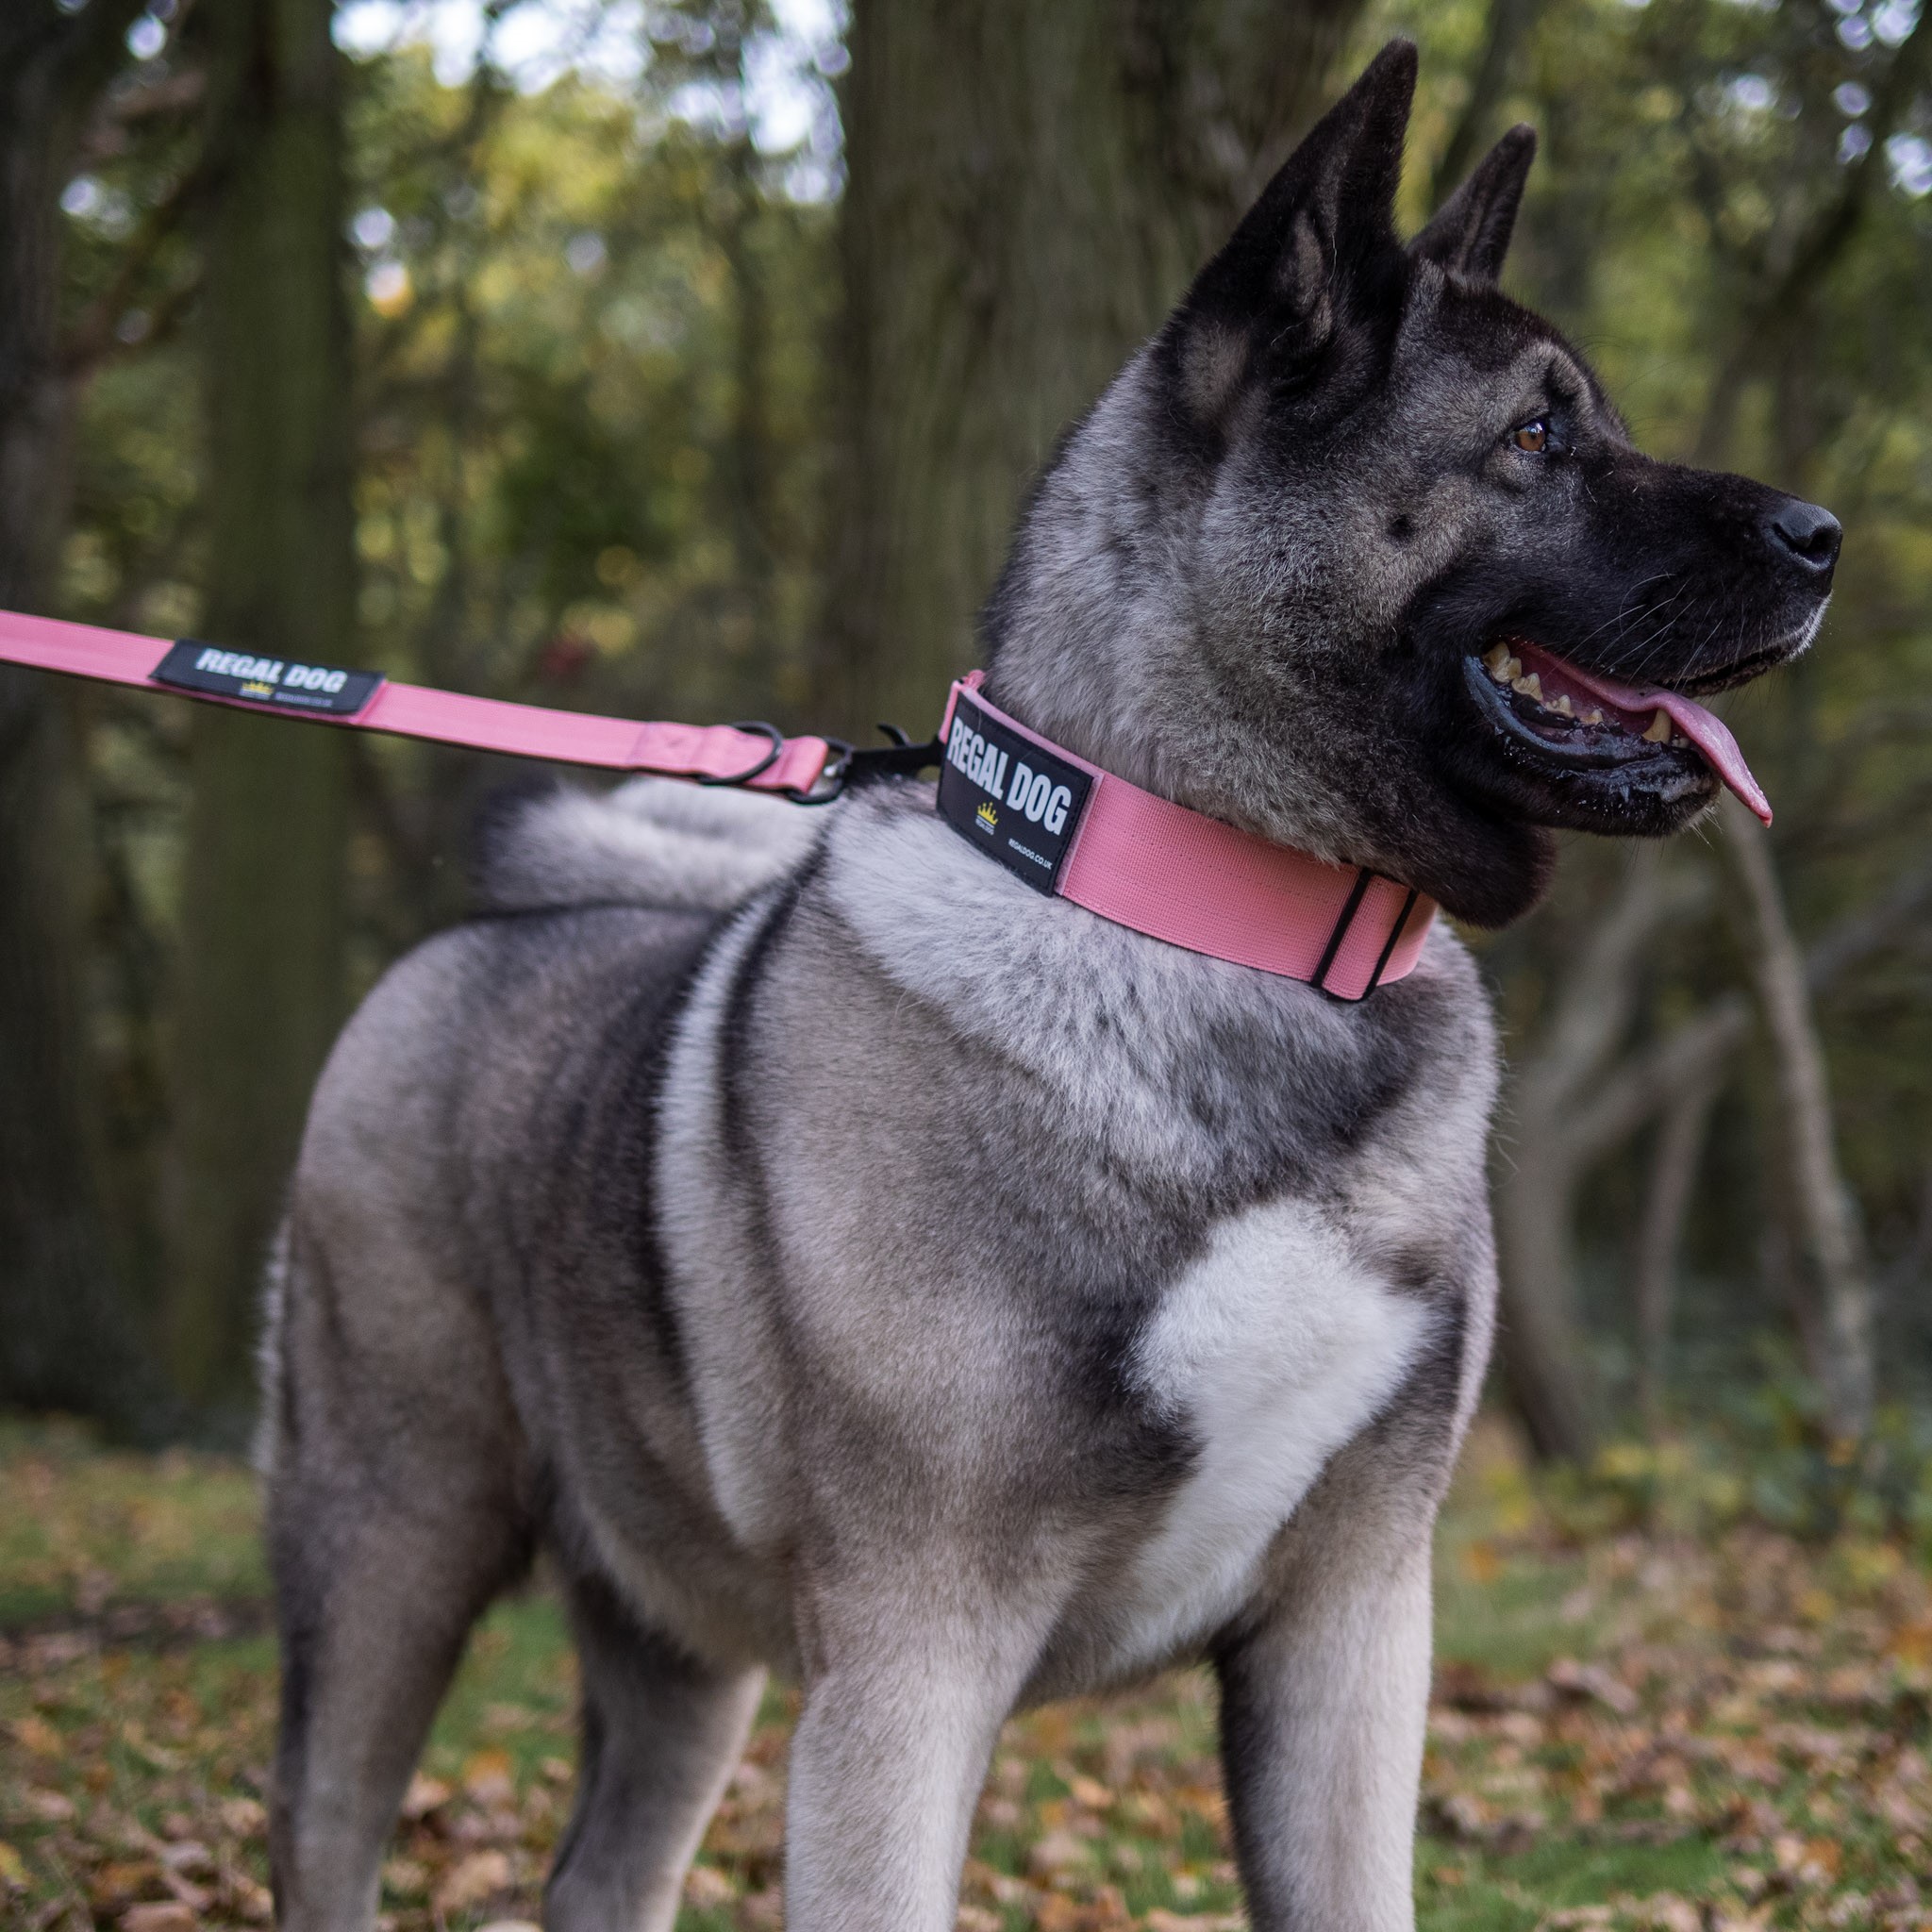 Pink Tactical Collar (5cm) - Regal Dog - Tactical Dog Collar